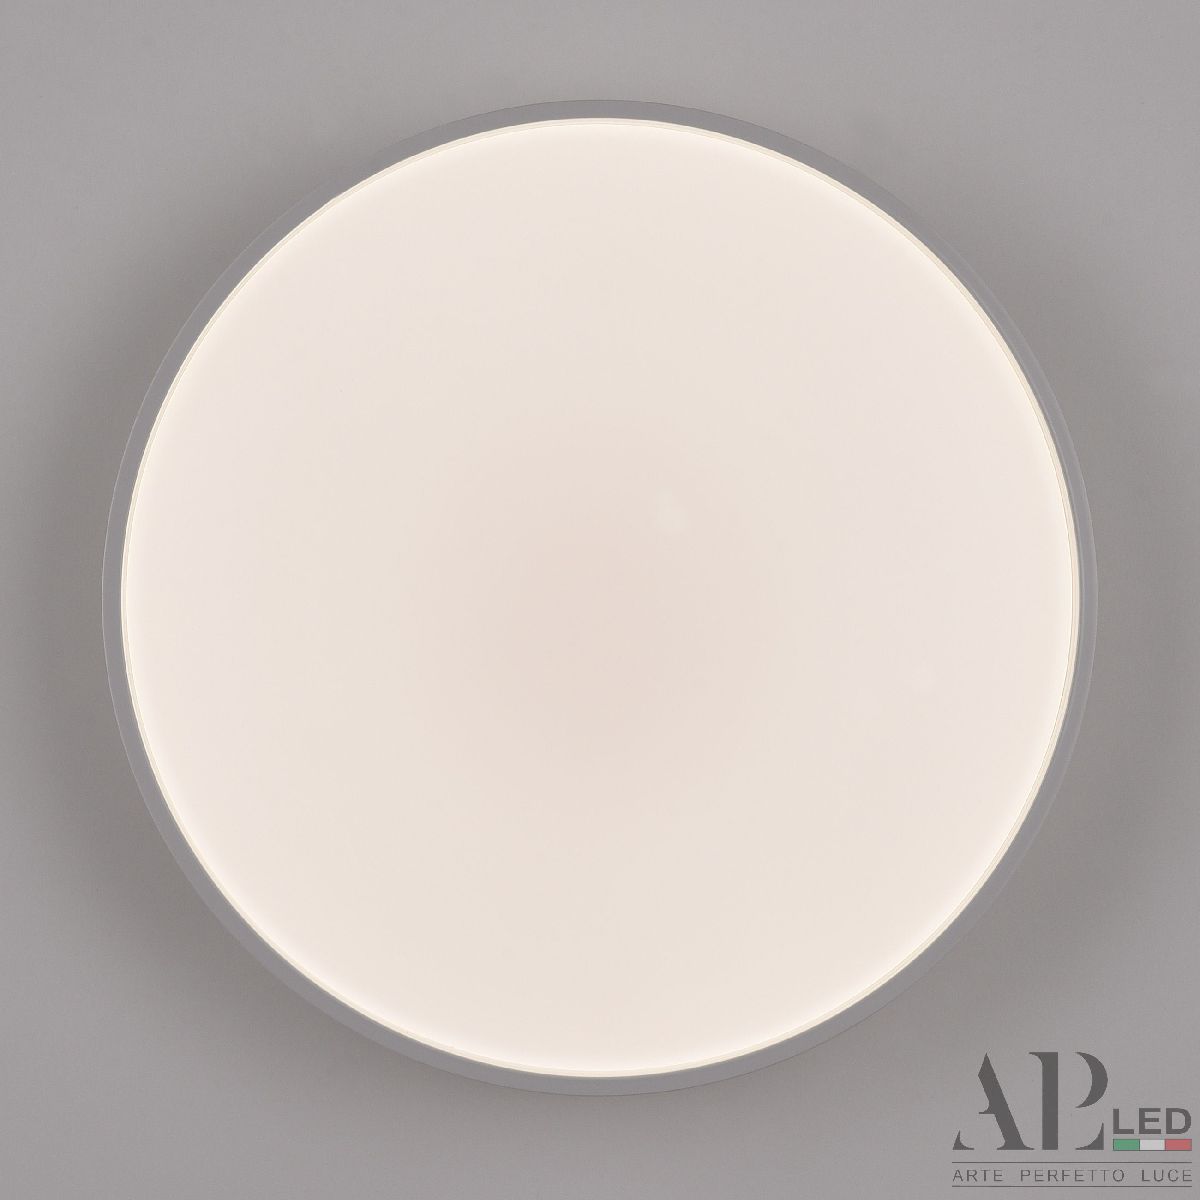 Потолочный светильник Arte Perfetto Luce Toscana PRO 3315.XM302-2-328/18W White TD